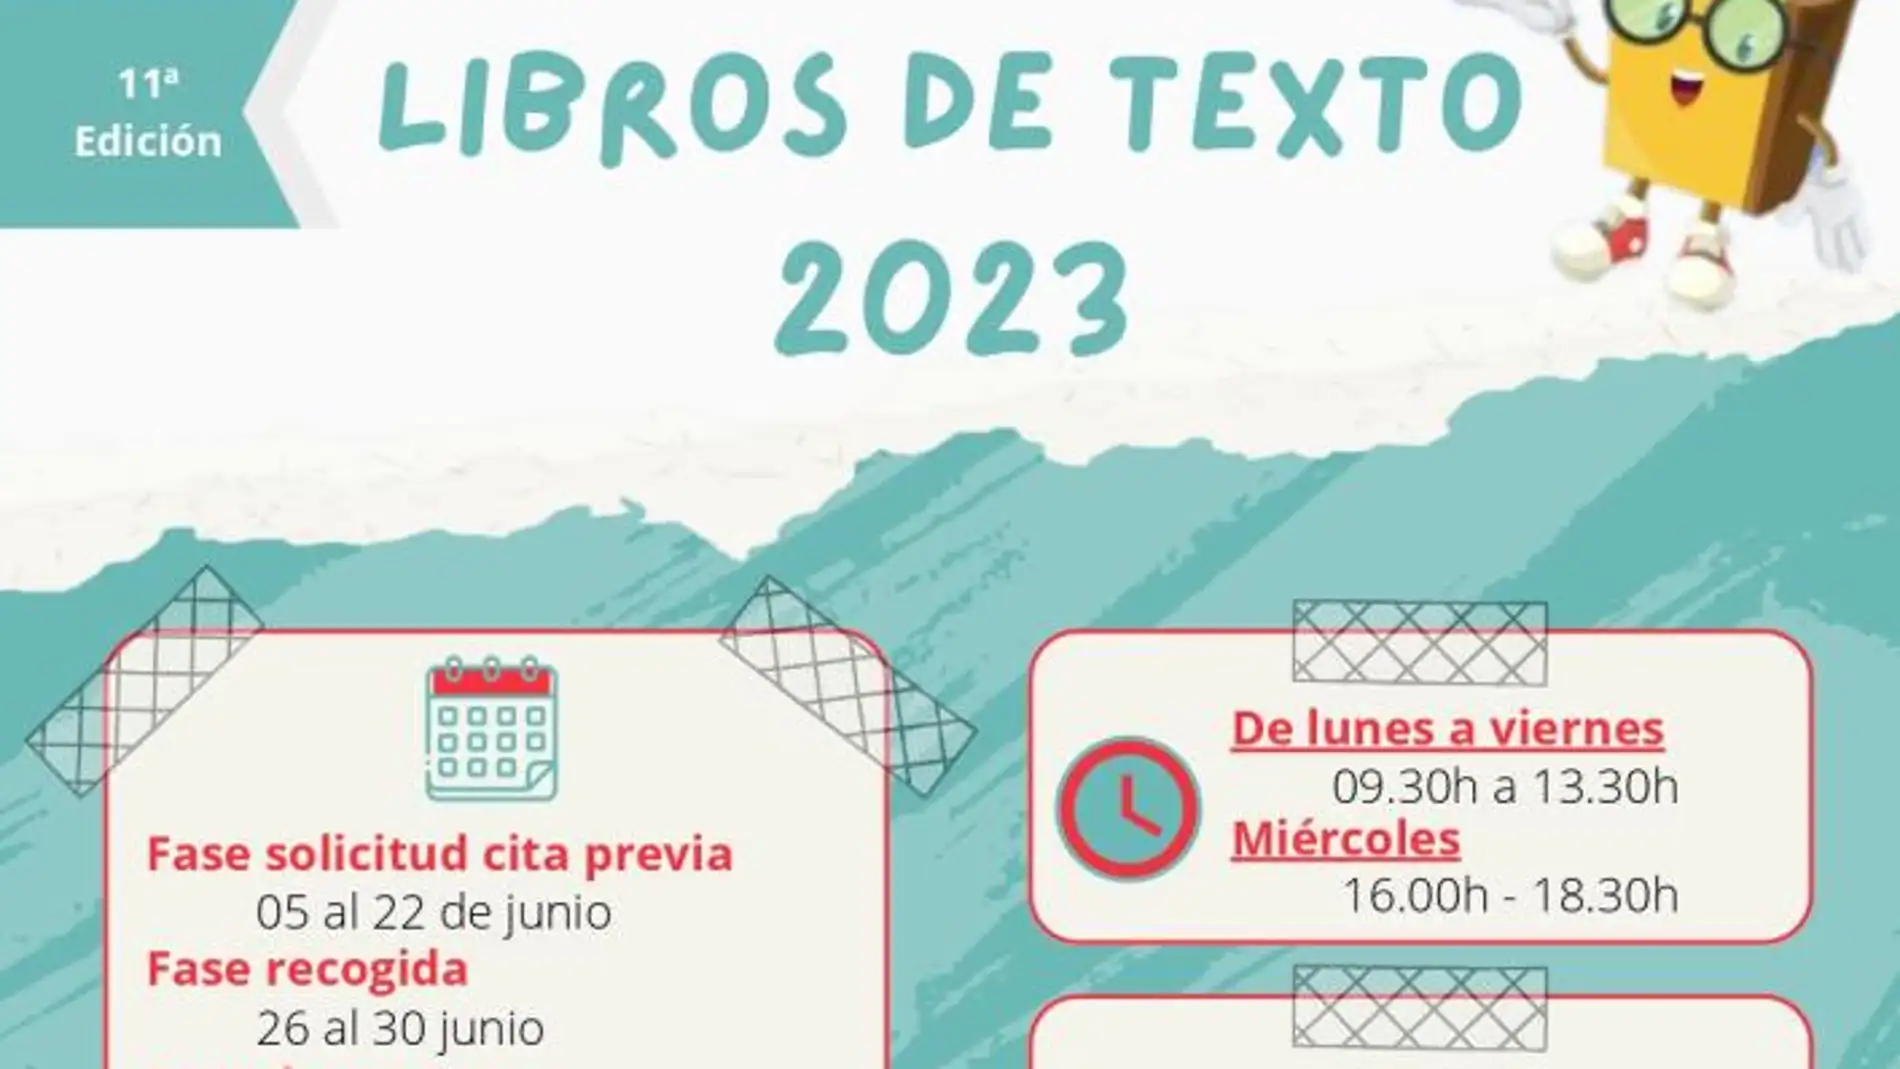 El Ayuntamiento de Oviedo repite el banco de libros de texto